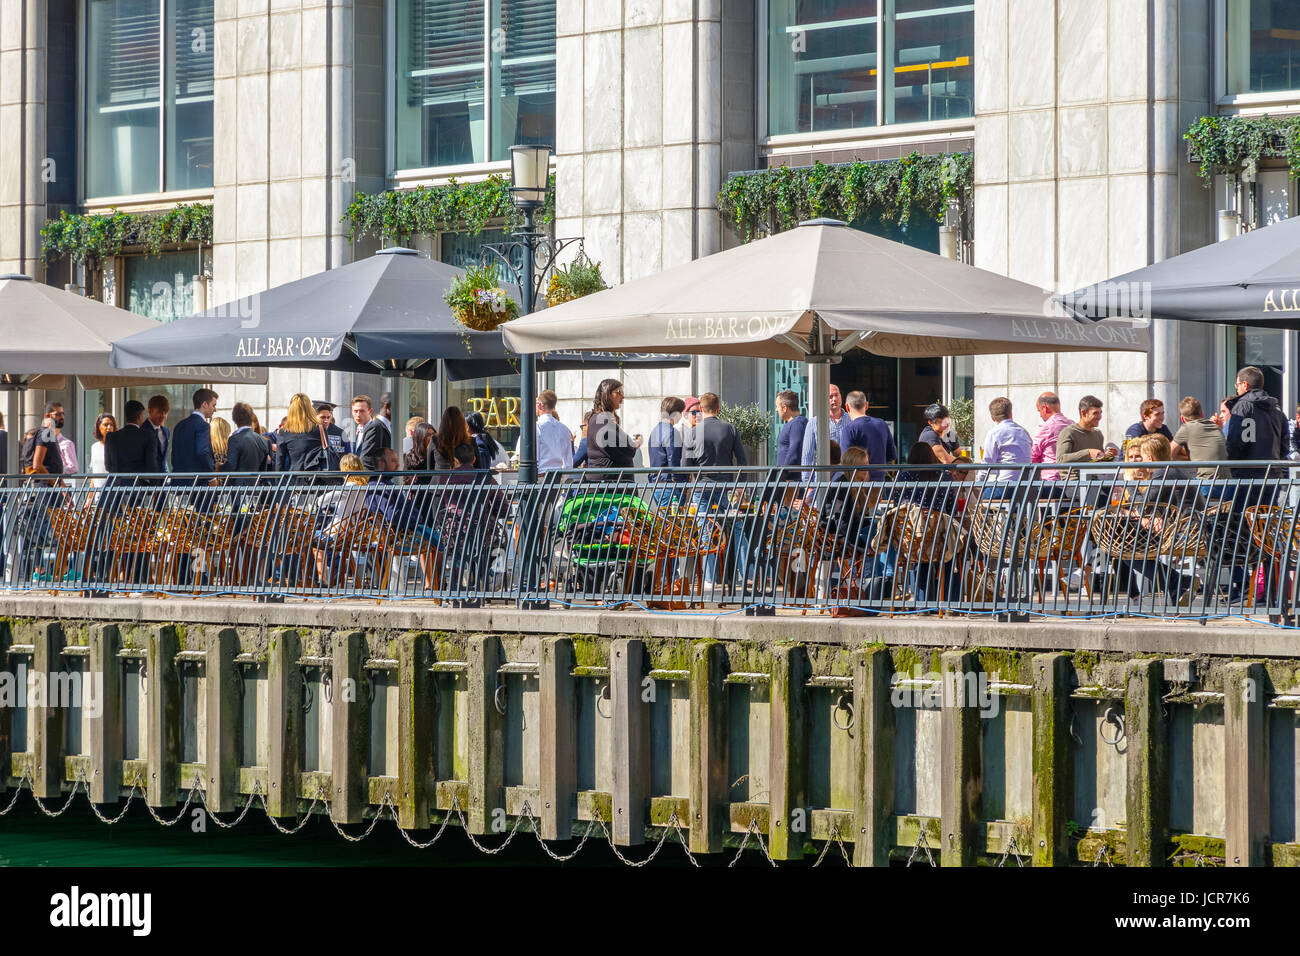 London, UK - 10. Mai 2017 - Dockside Bar in Canary Wharf voll mit Menschen, die an einem sonnigen Tag trinken Stockfoto